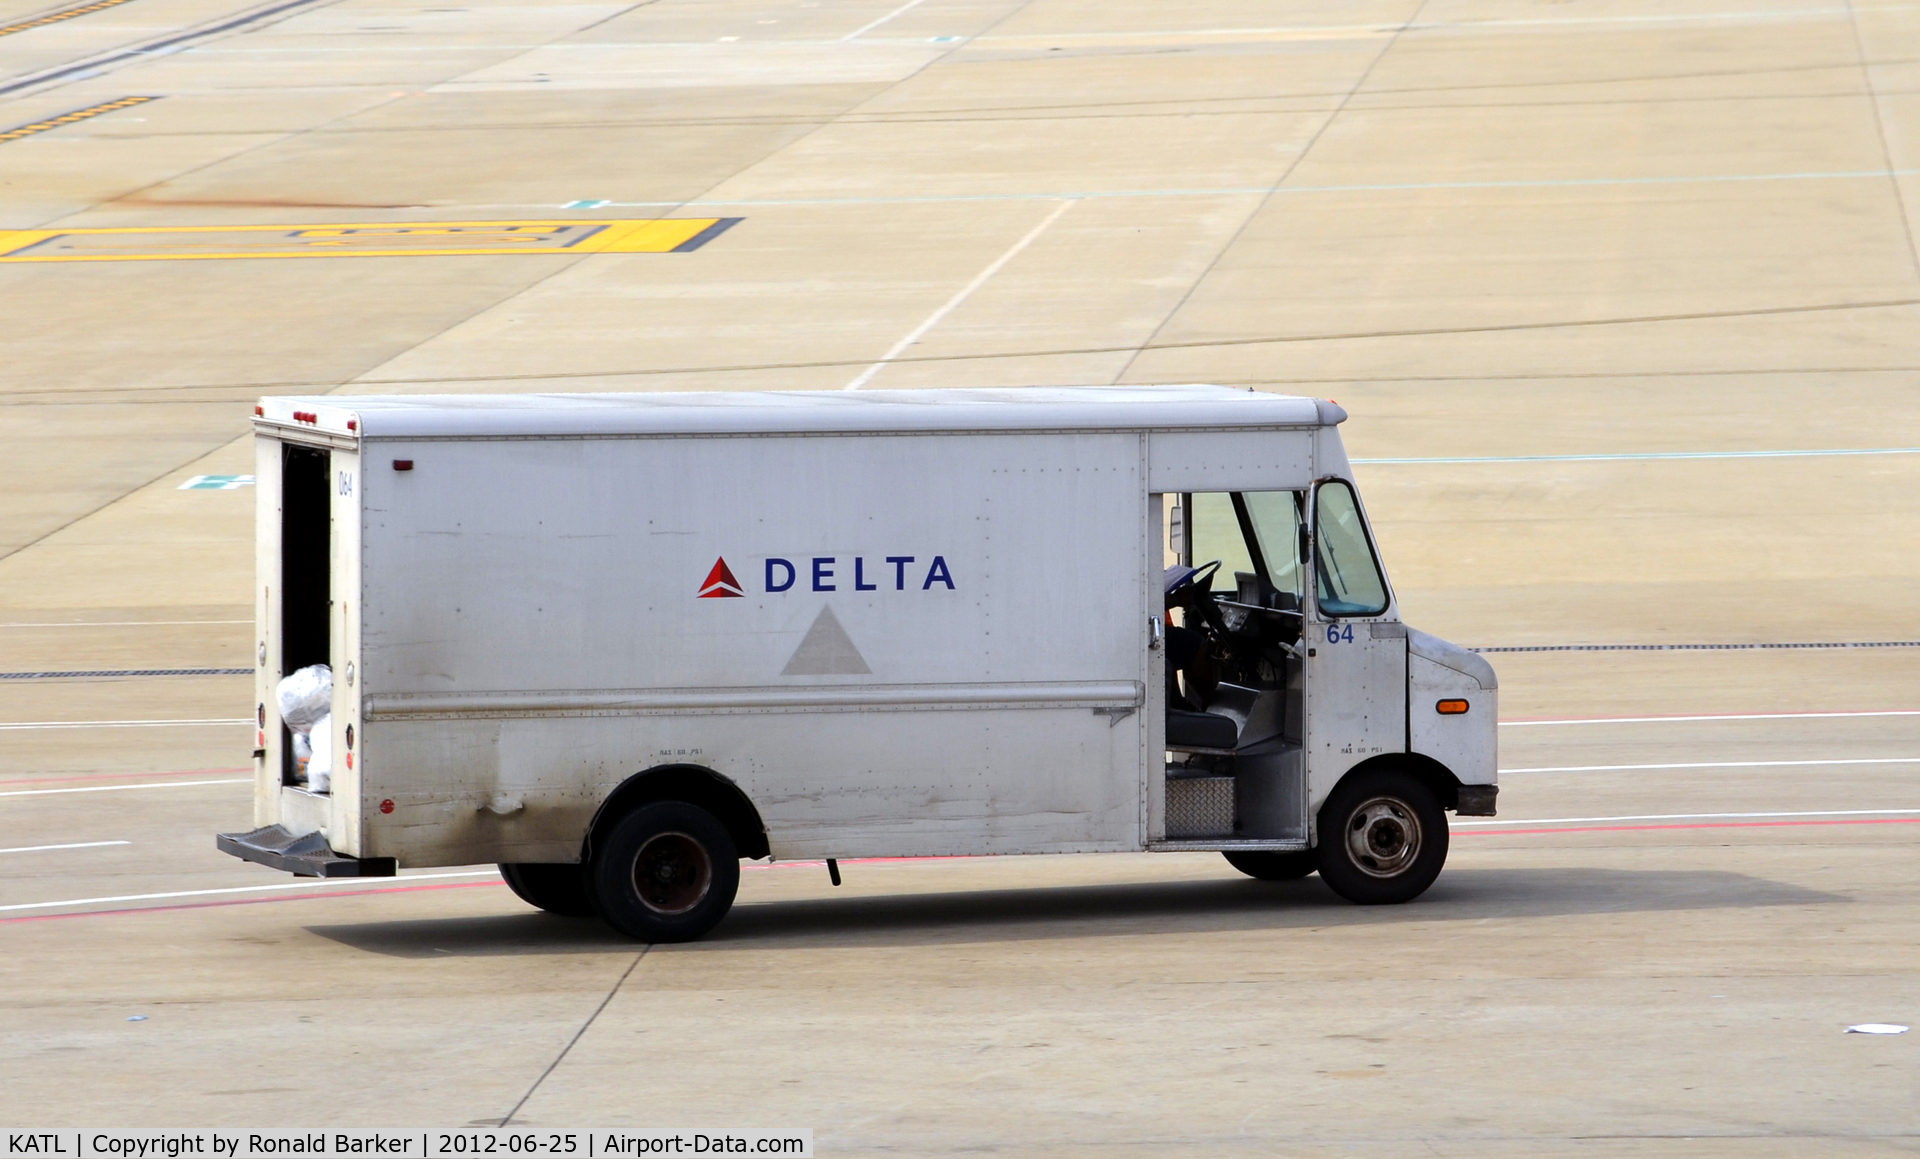 Hartsfield - Jackson Atlanta International Airport (ATL) - Truck on flight line